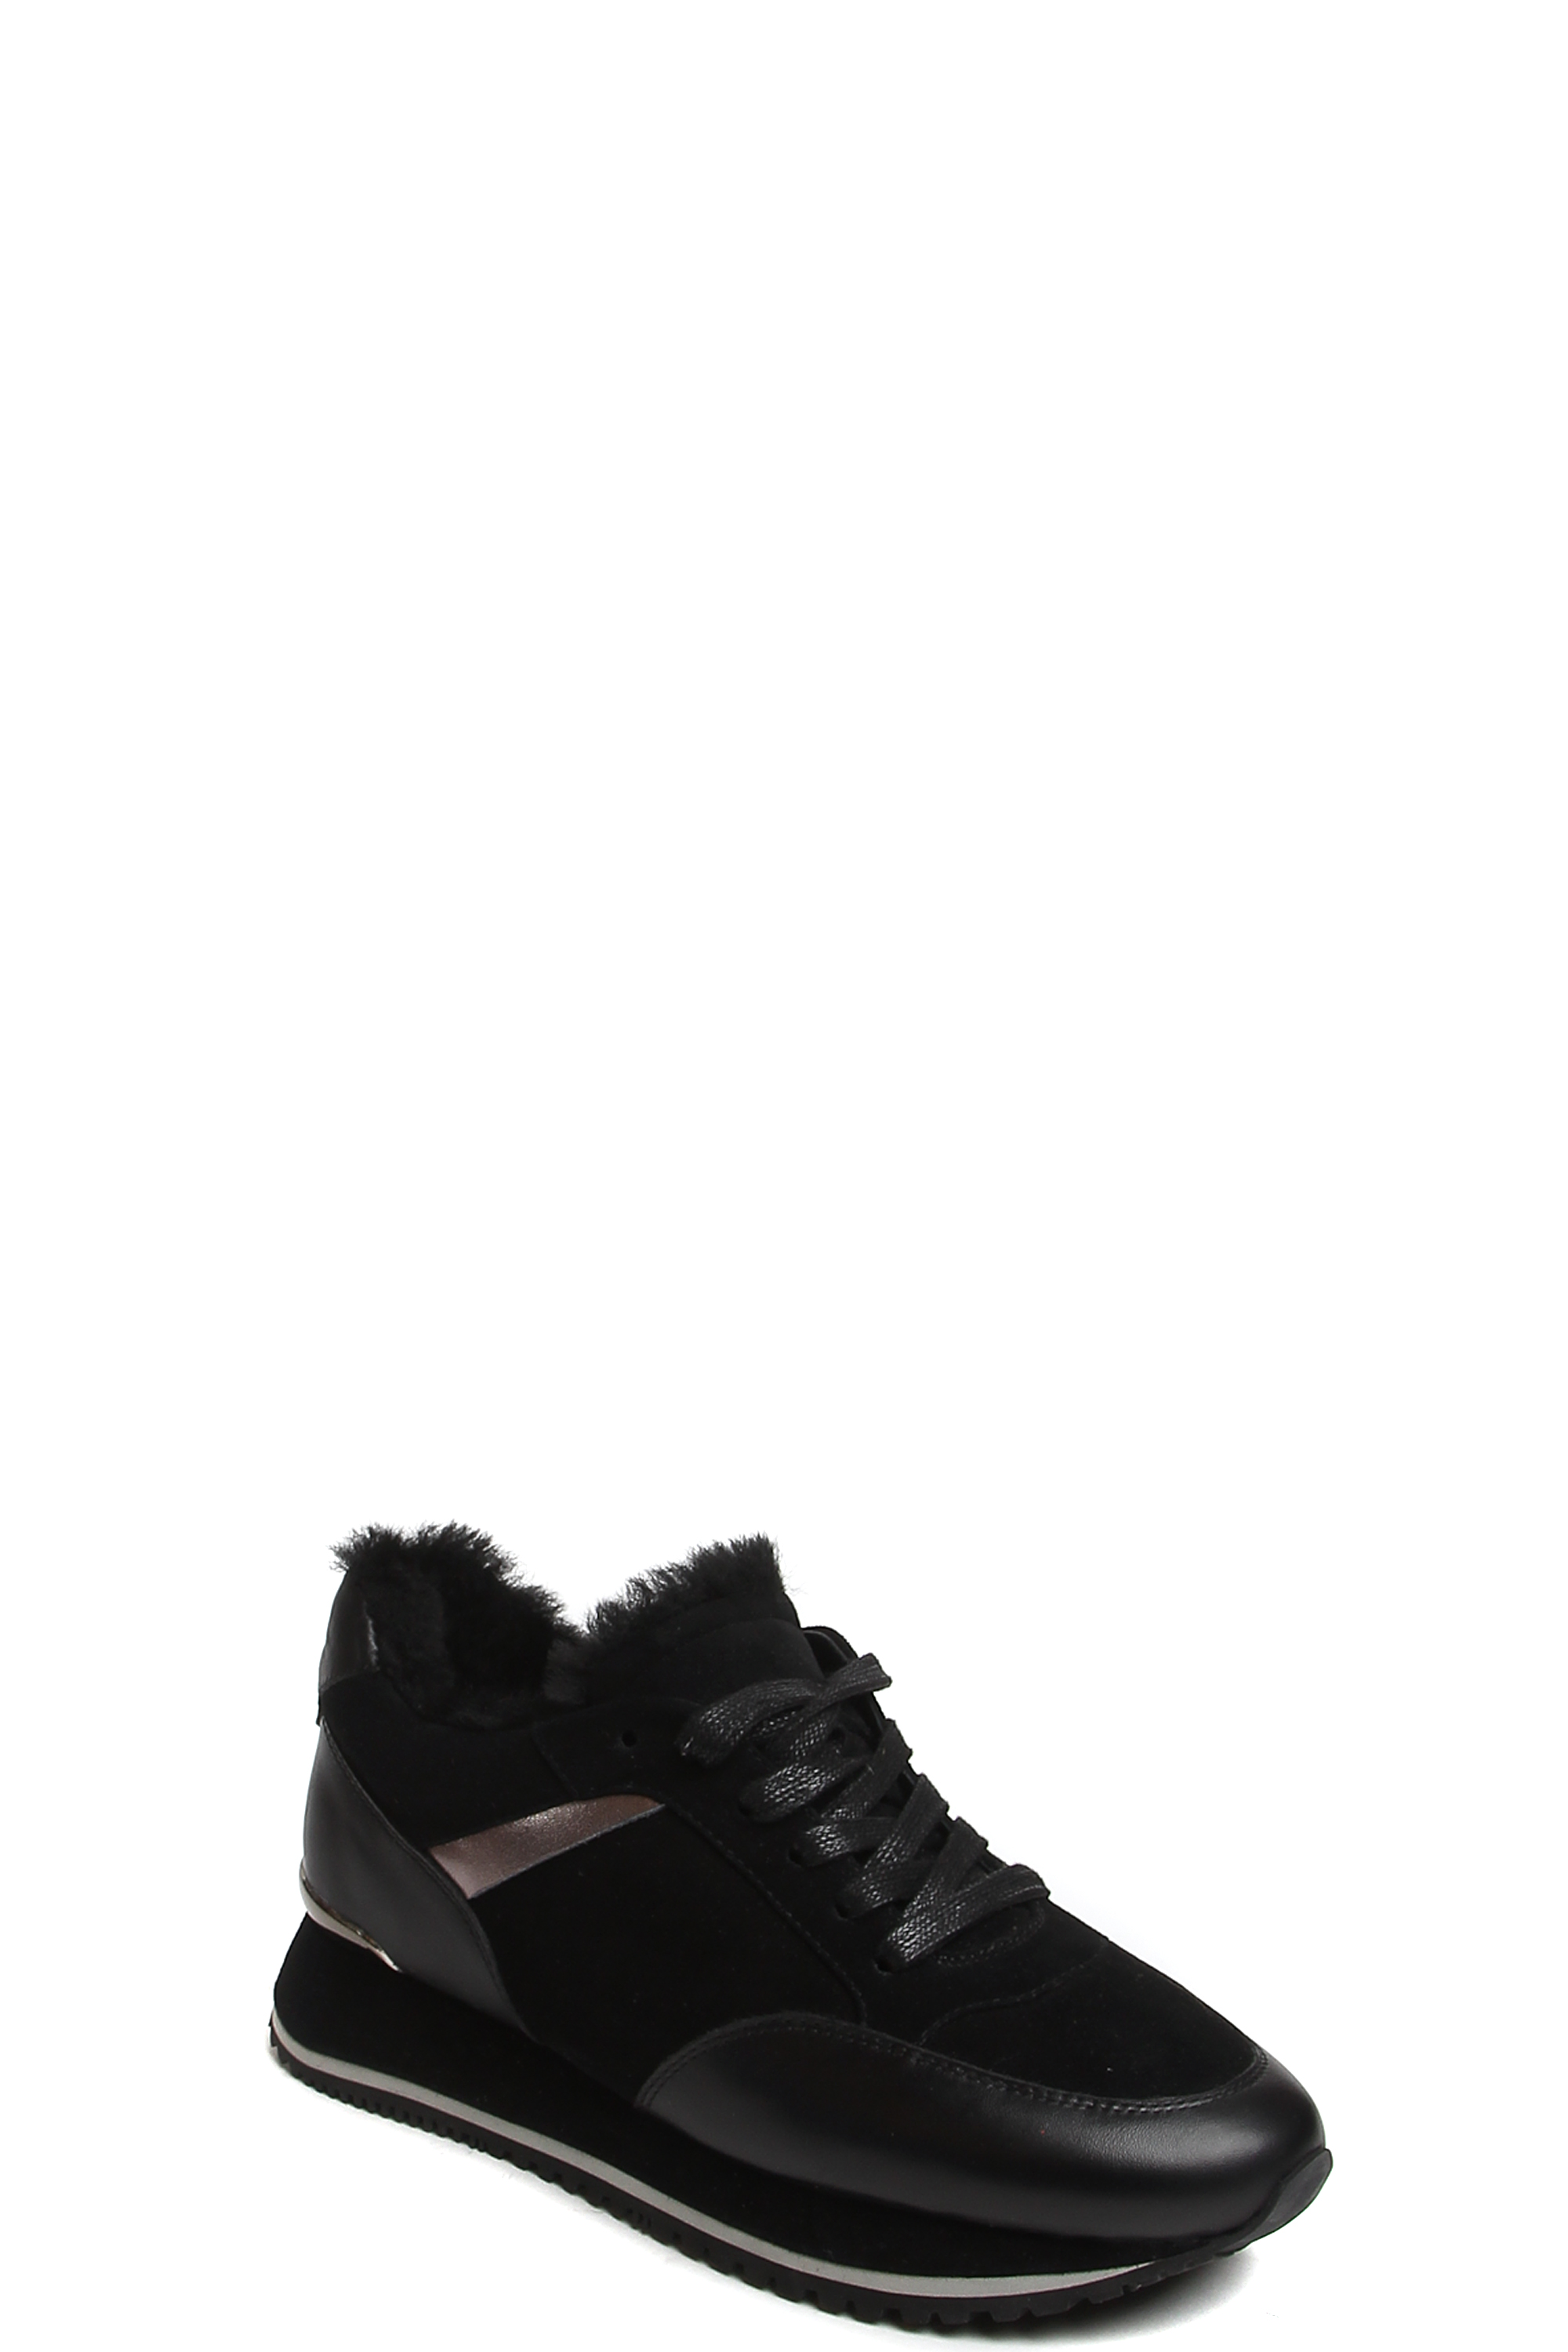 Ботинки MILANA 182177-1-210F черный - купить 7990